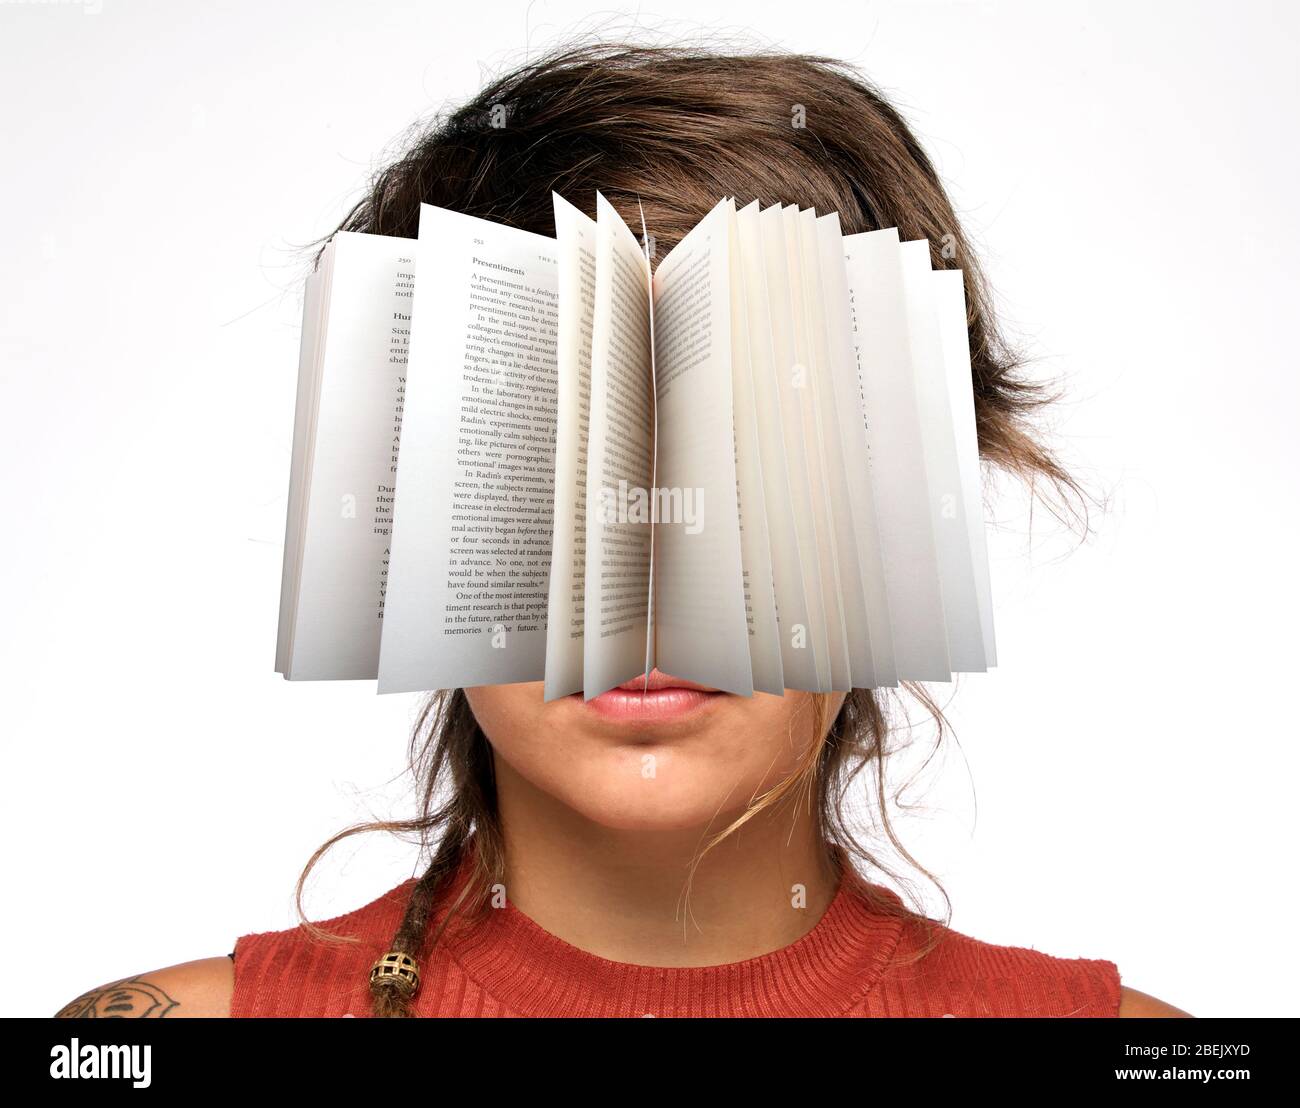 Bookworm. Stock Photo